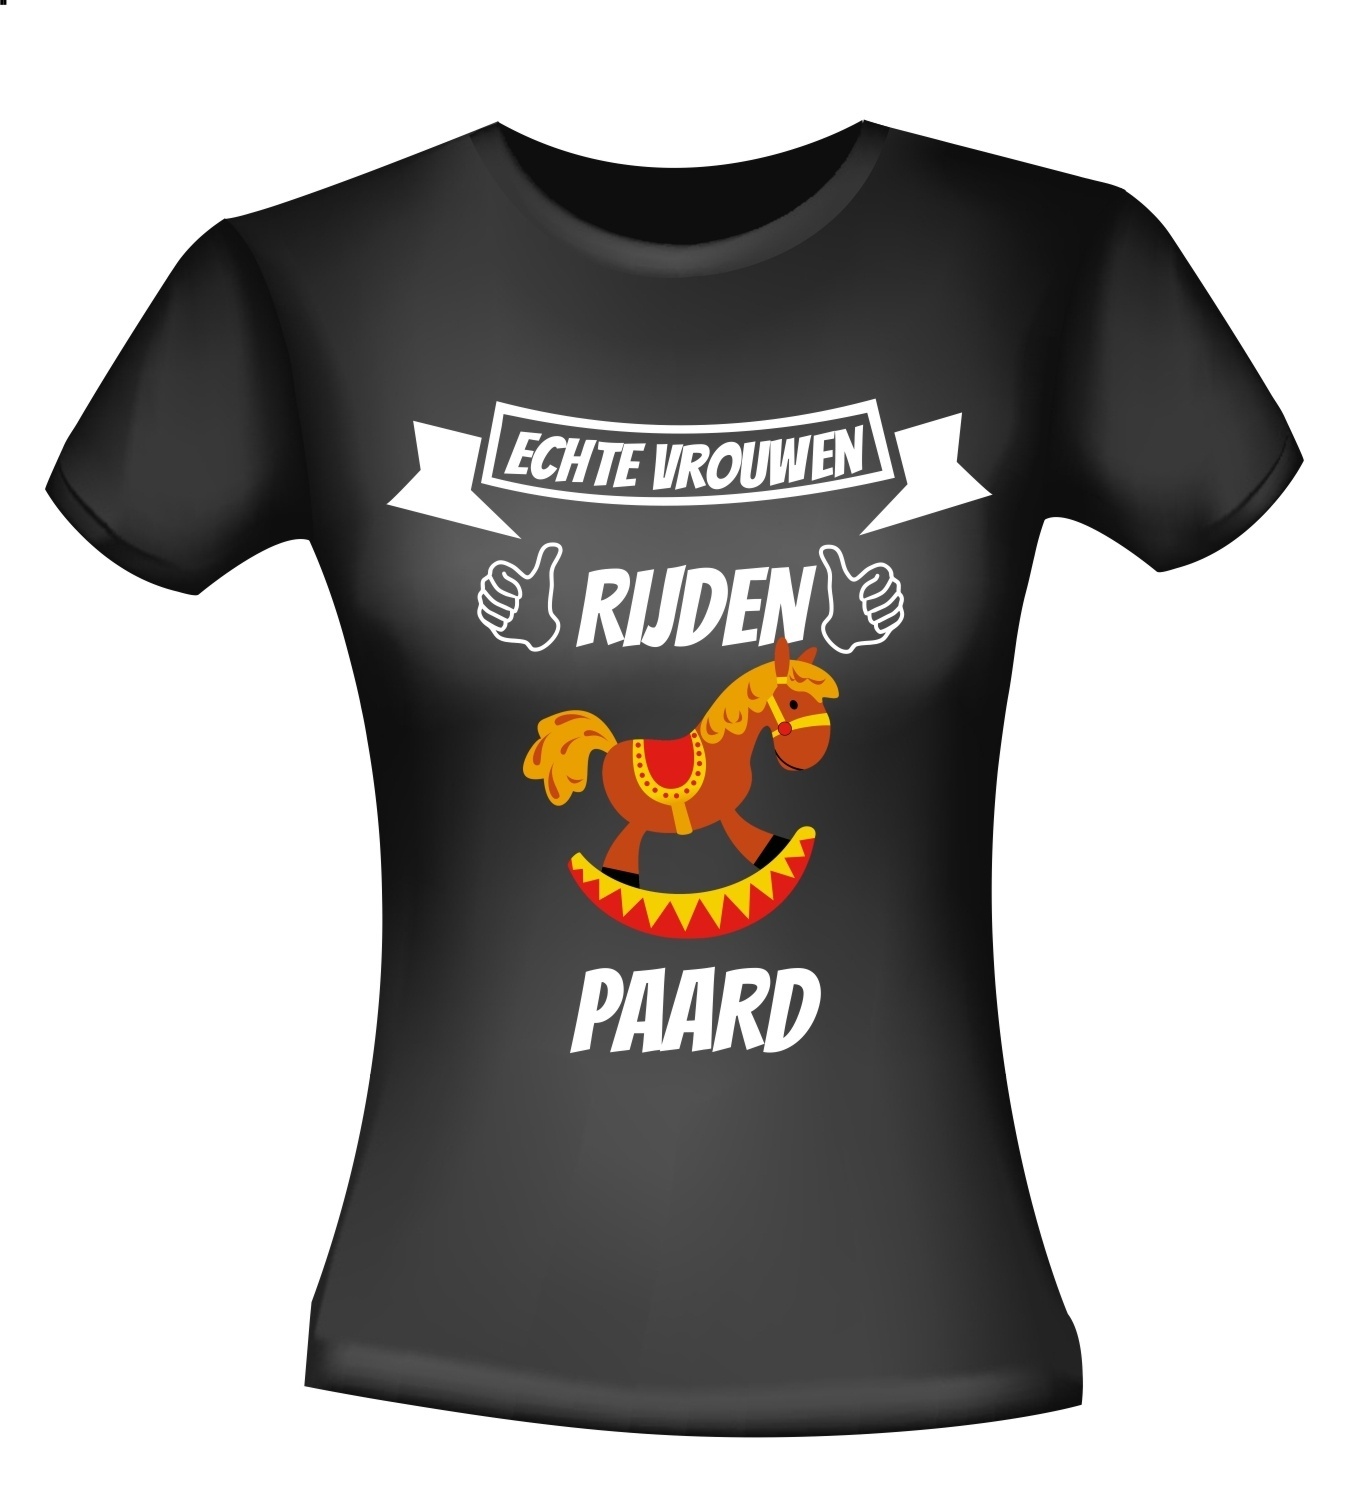 echte vrouwen rijden paard hobbelpaard gek grappig T-shirt